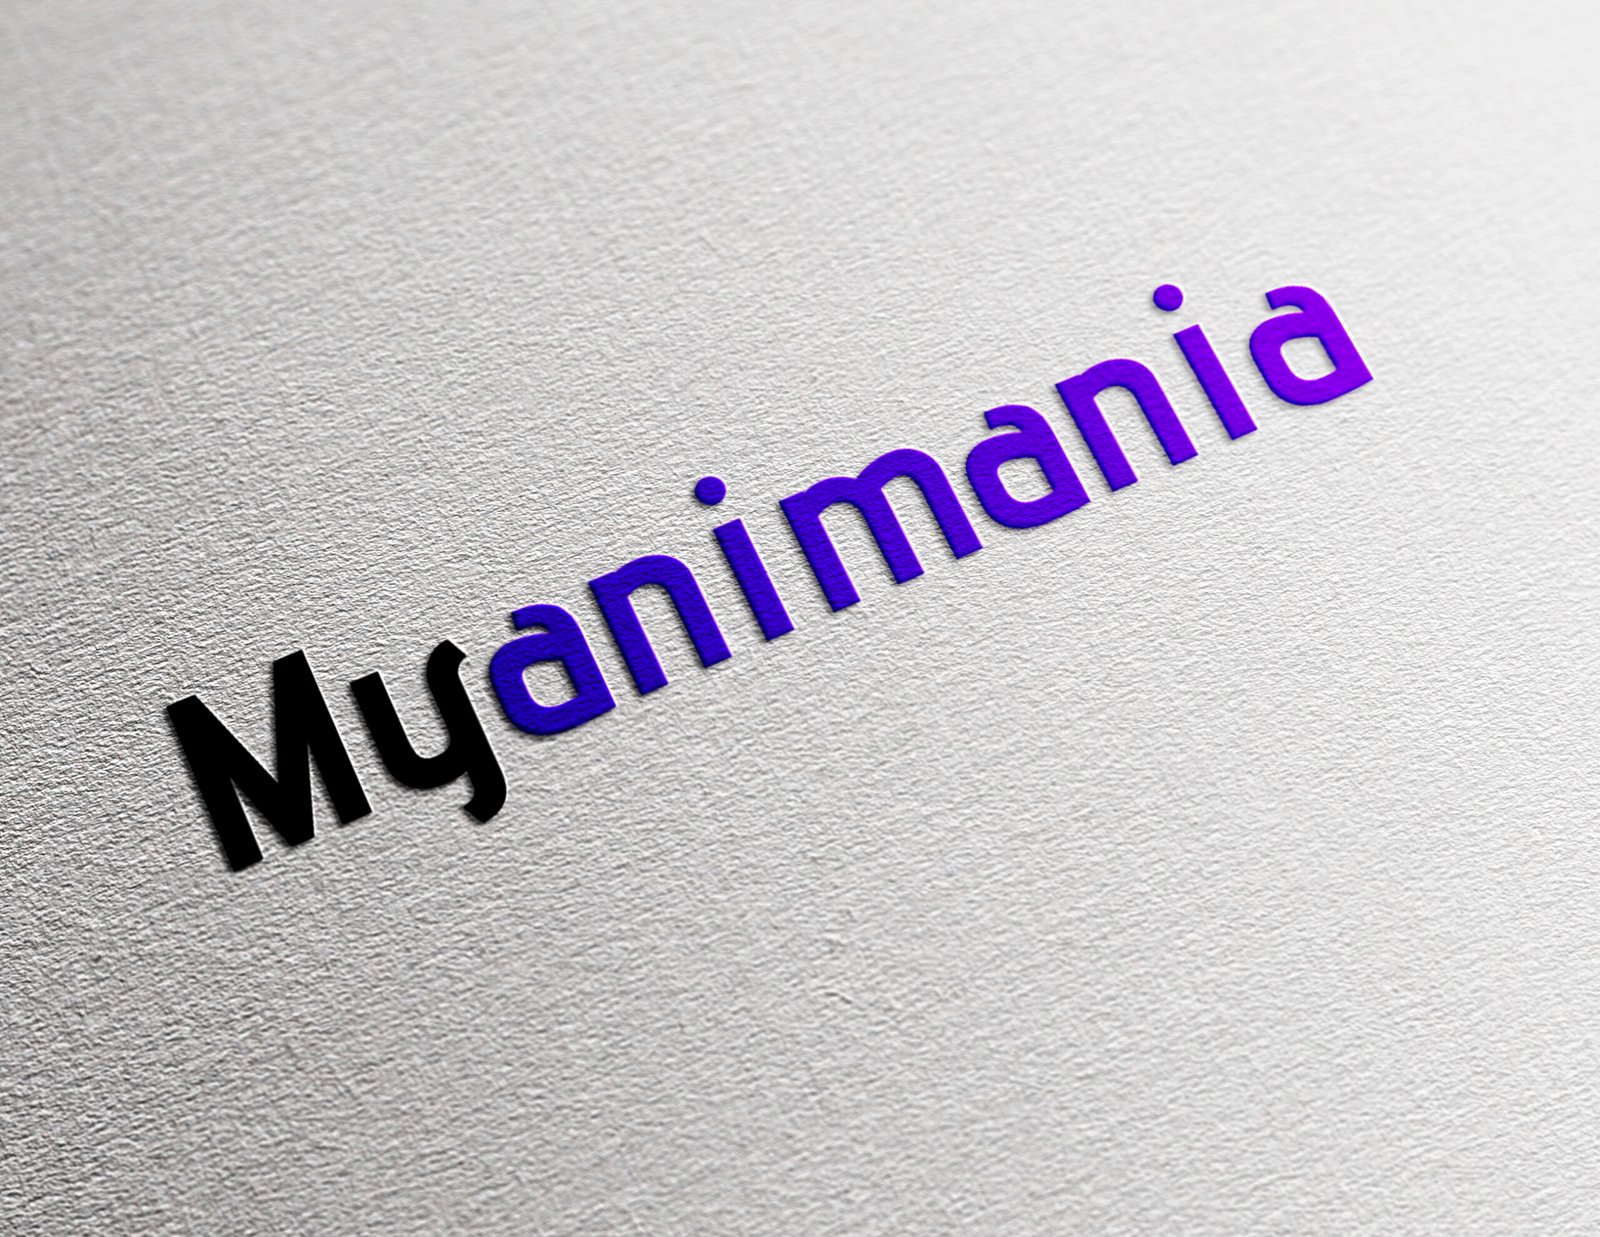 Myanimania mockup